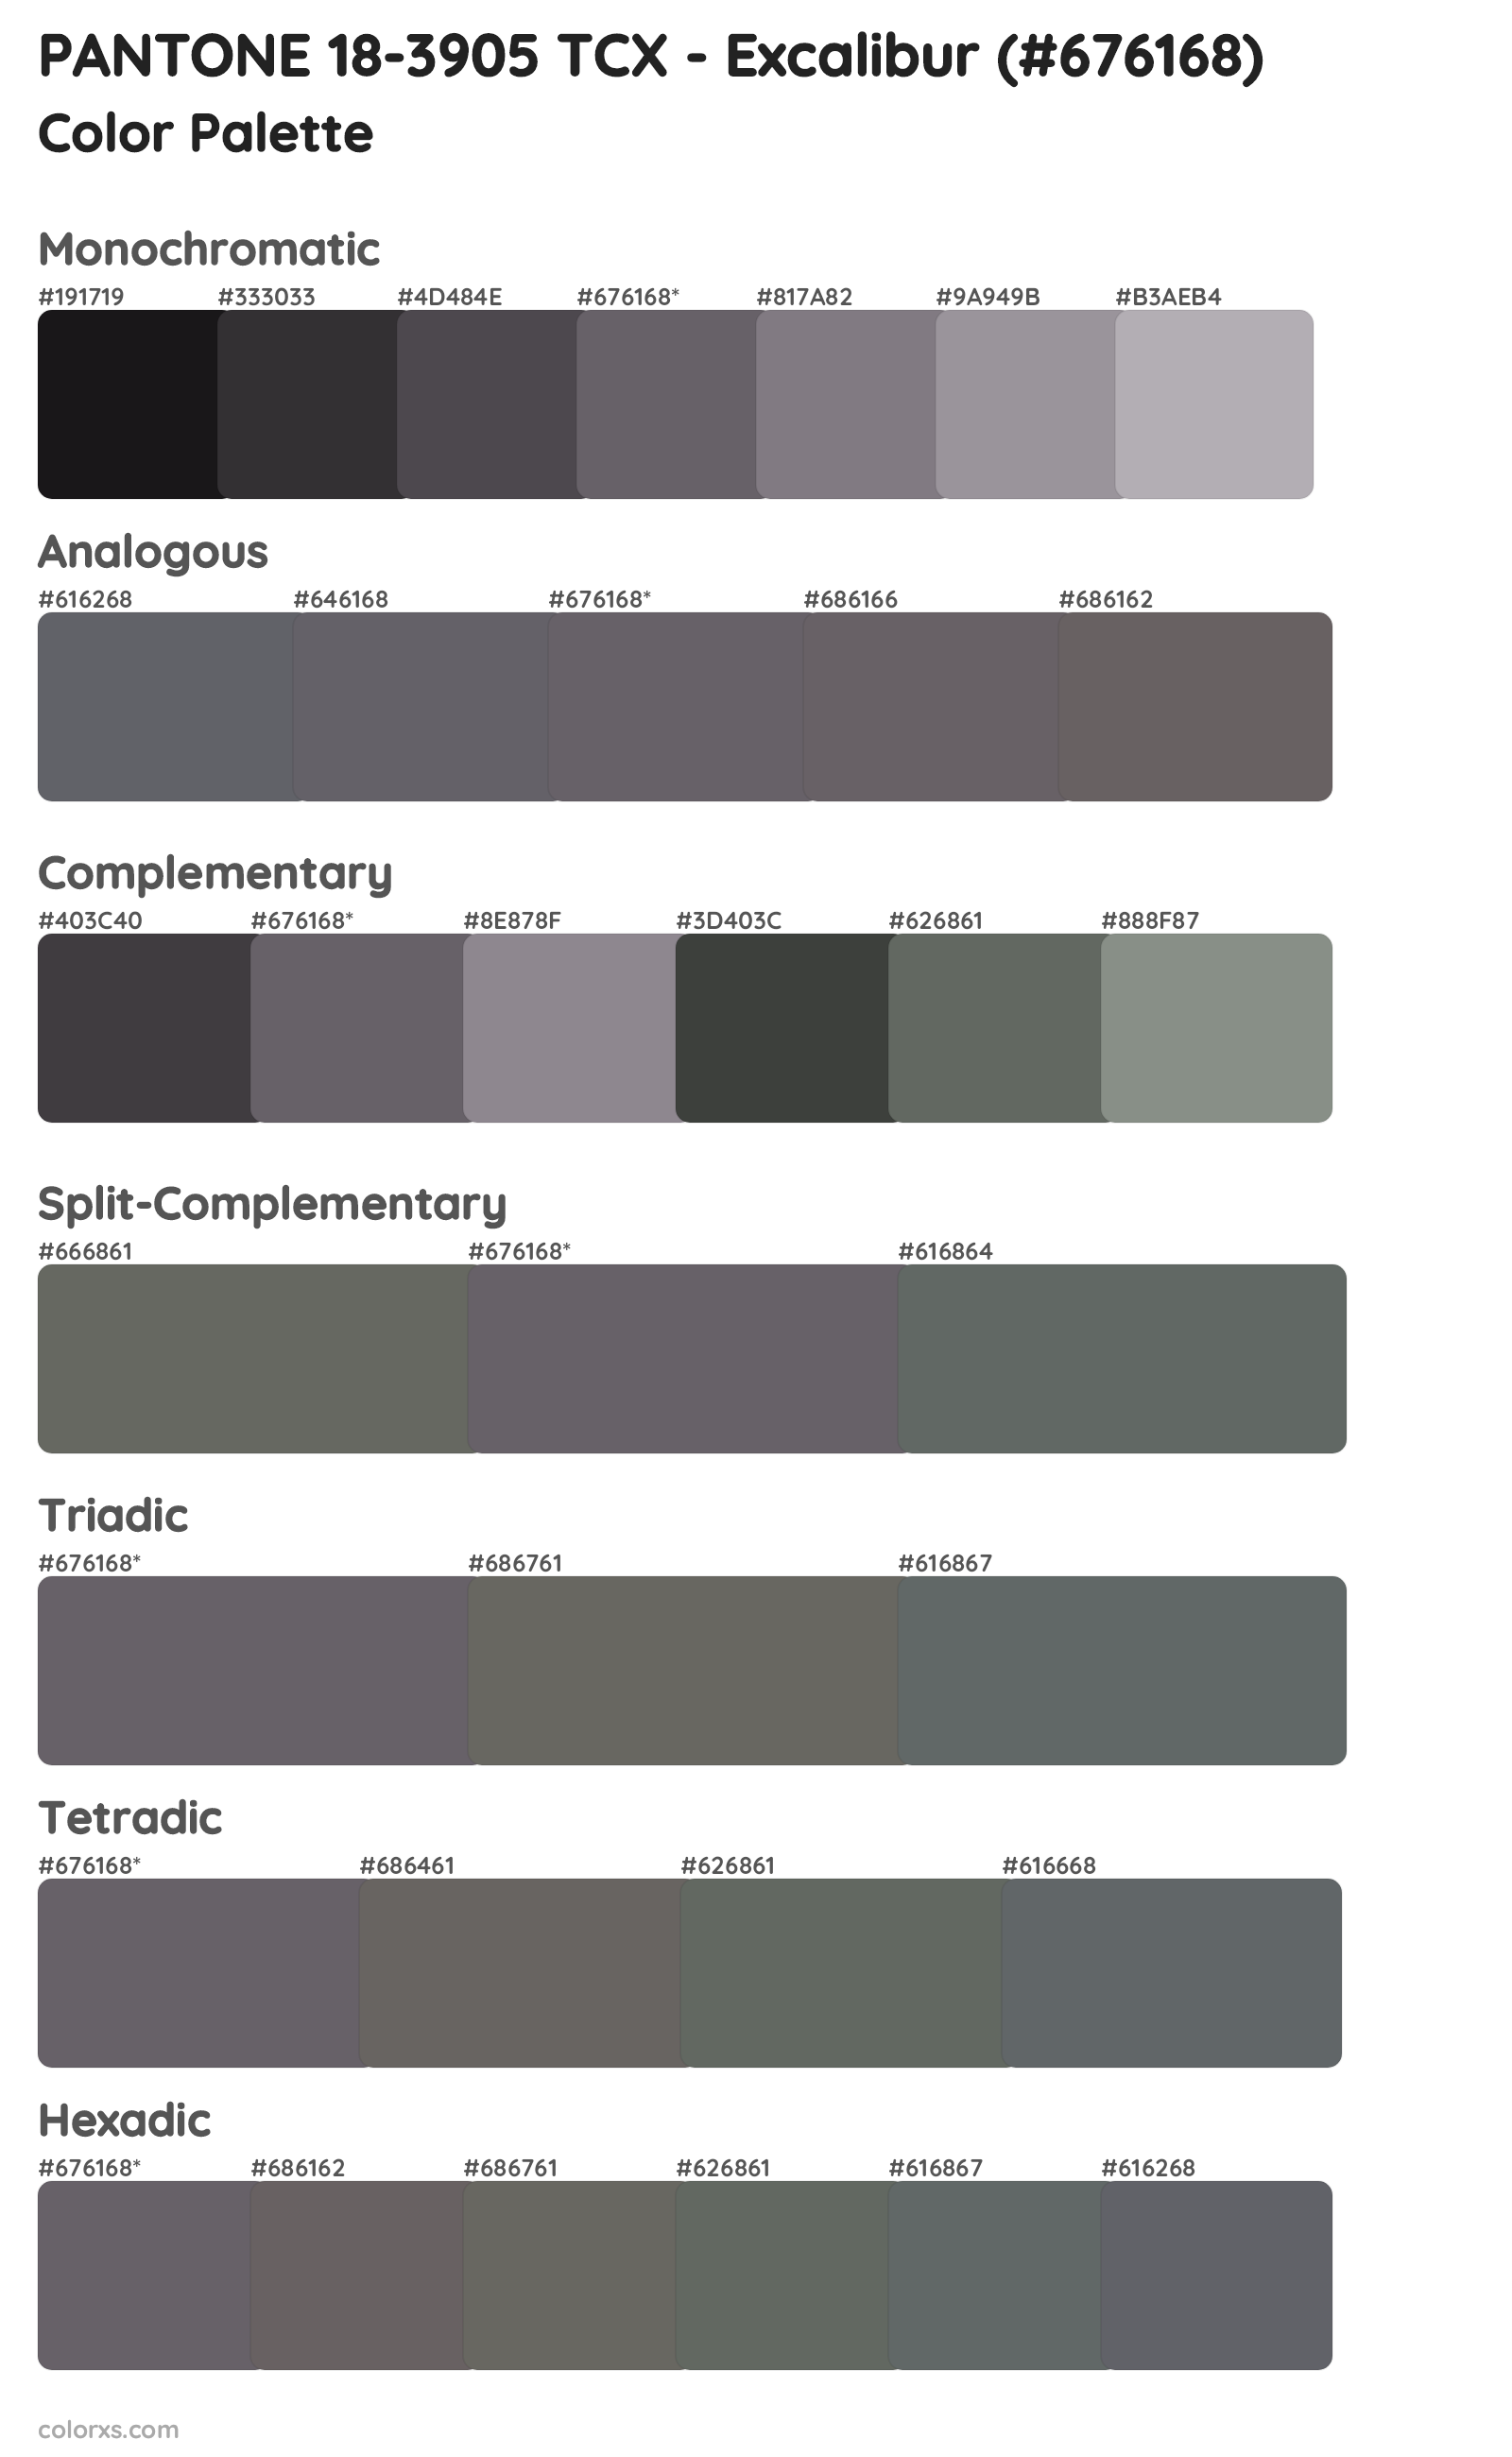 PANTONE 18-3905 TCX - Excalibur Color Scheme Palettes